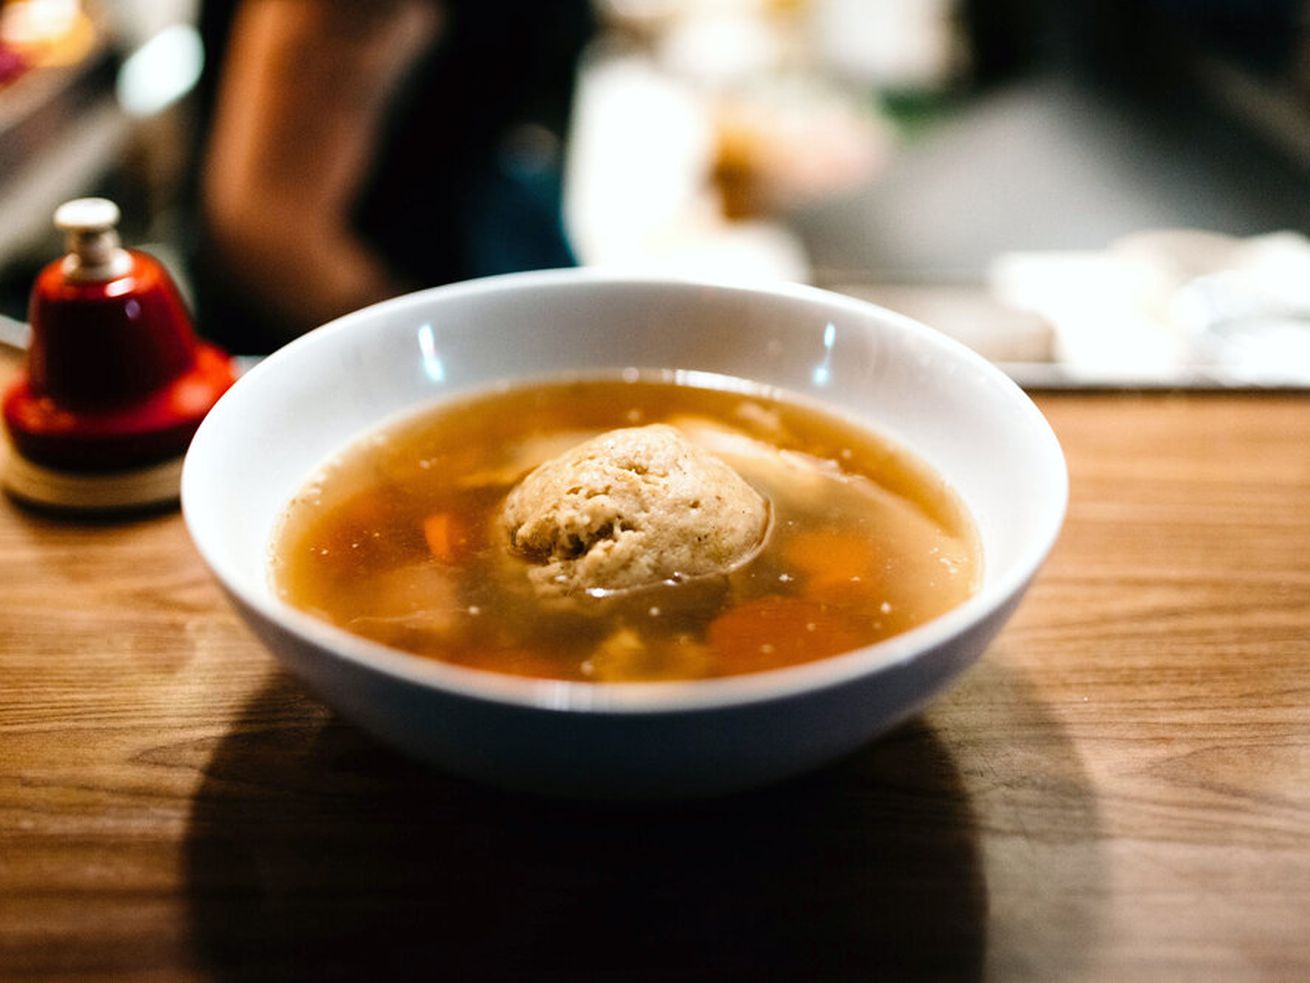 A bowl of matzo ball soup